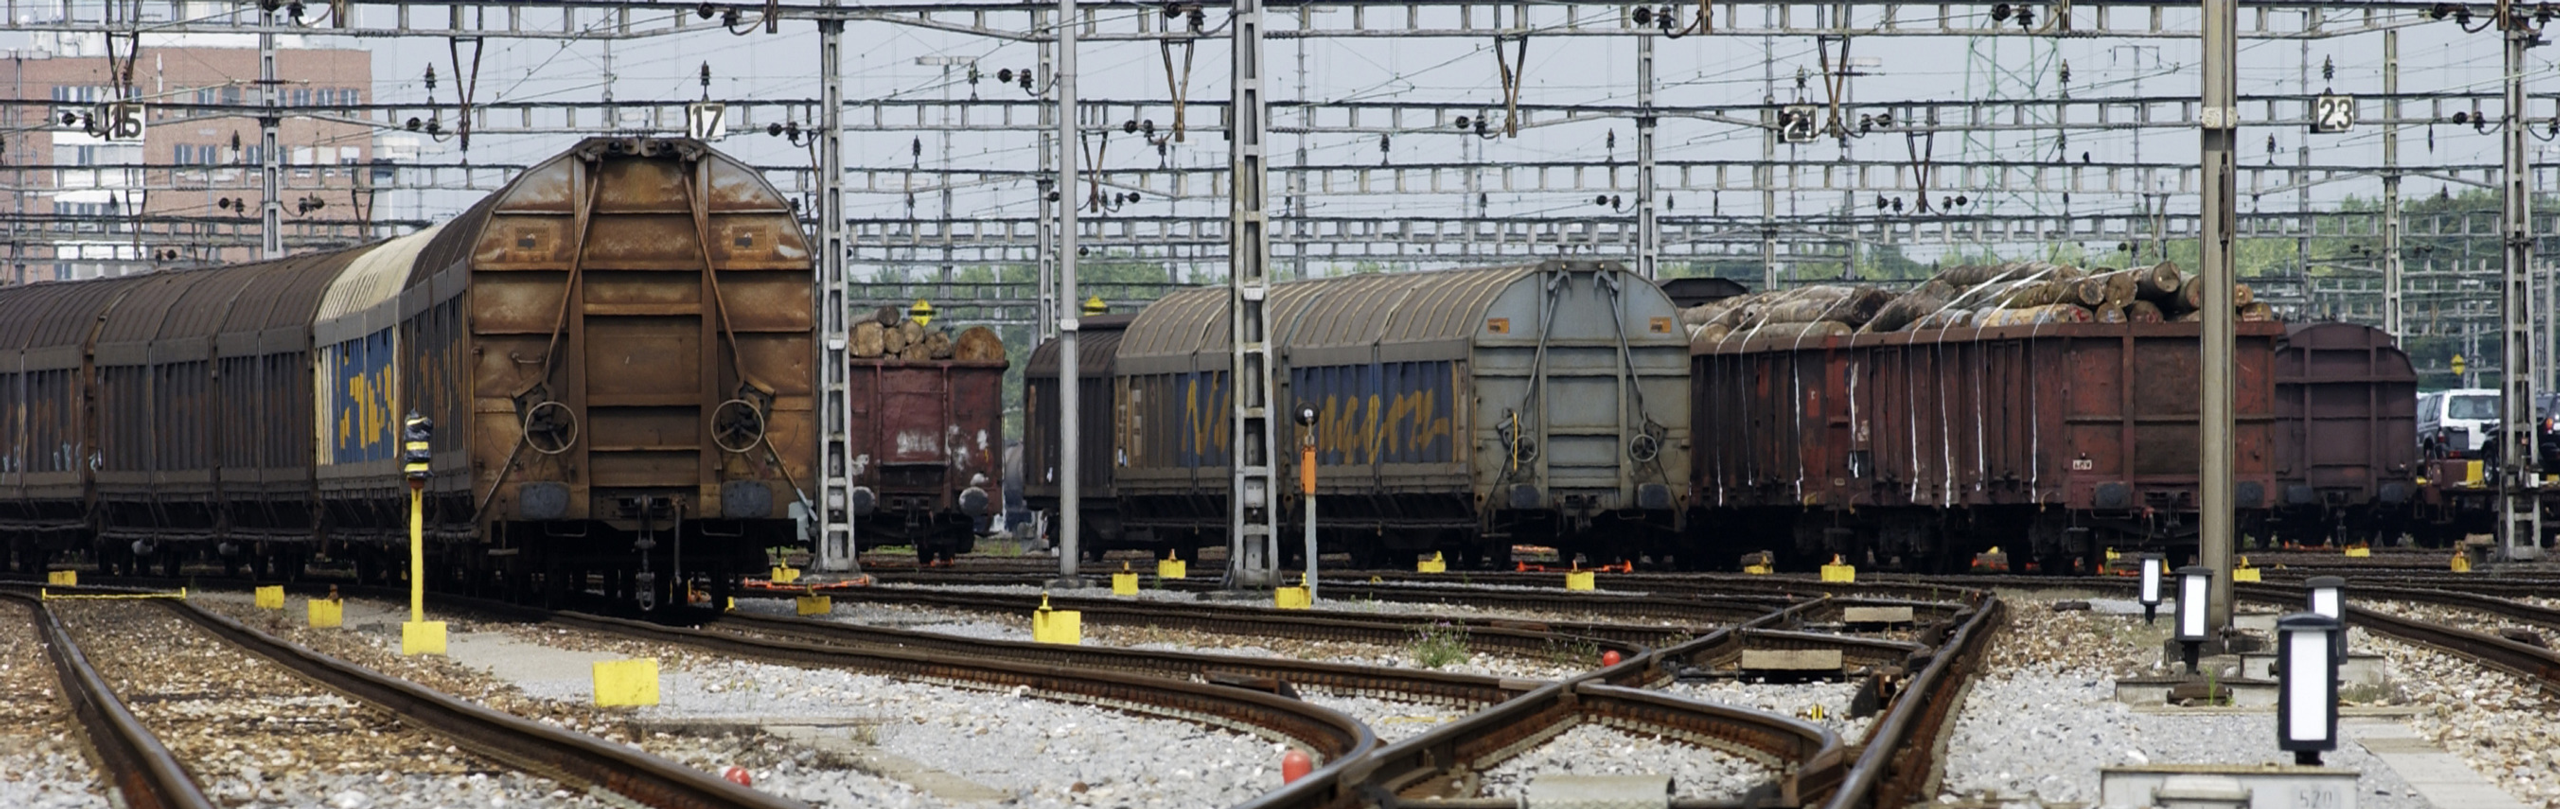 Güterwagons auf Gleisen bei Tag